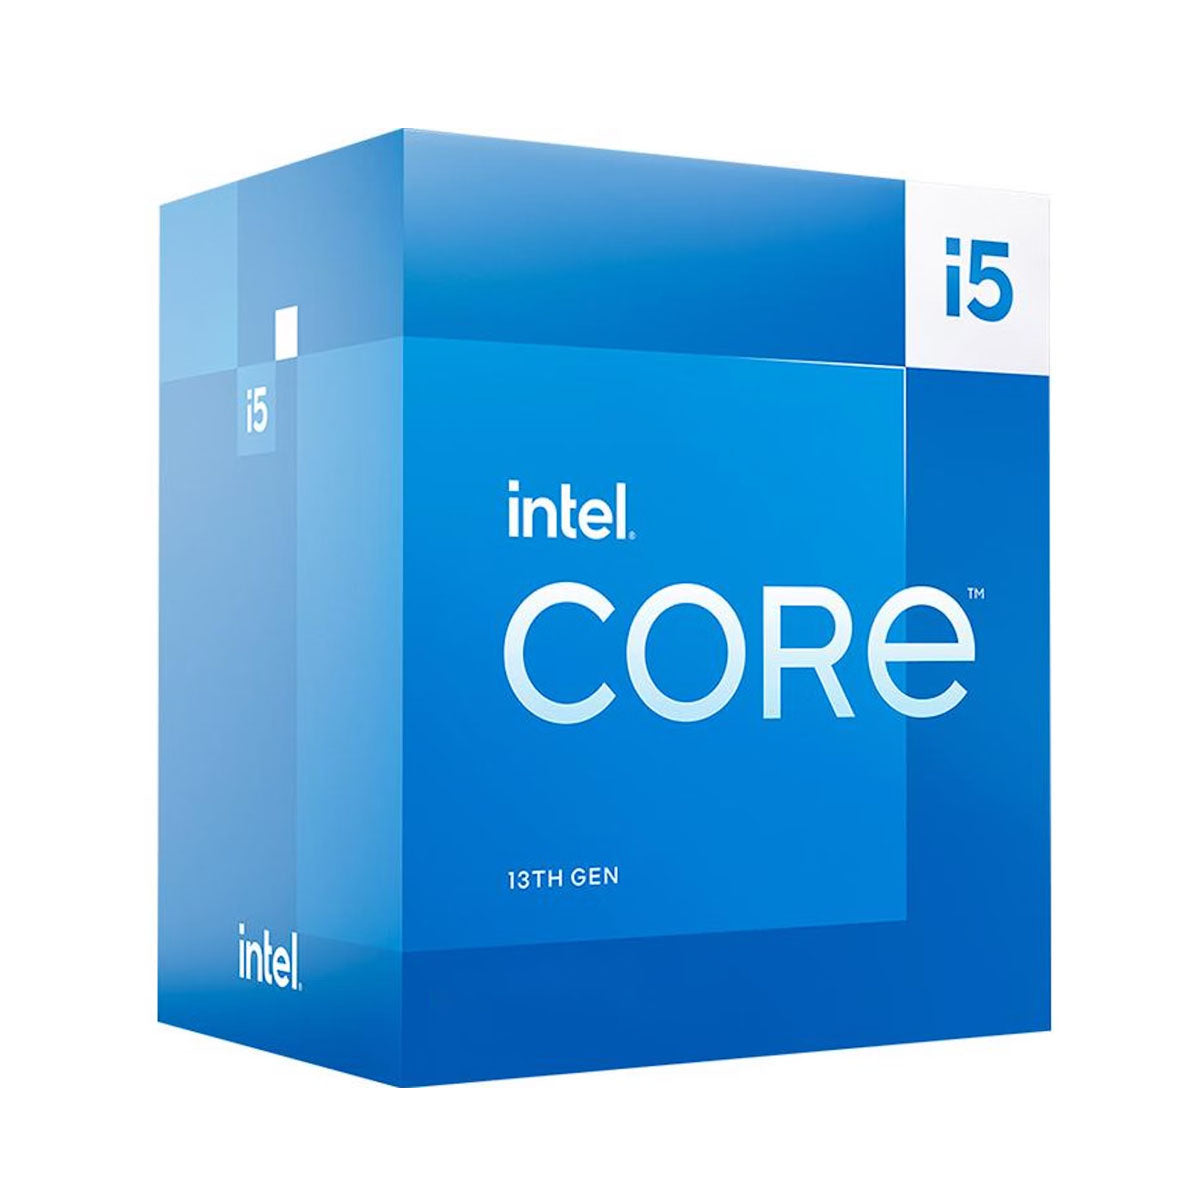 Intel Core 13th Gen i5-13400 LGA1700 Desktop Processor 10 Cores up to 4.6GHz 20MB Cache